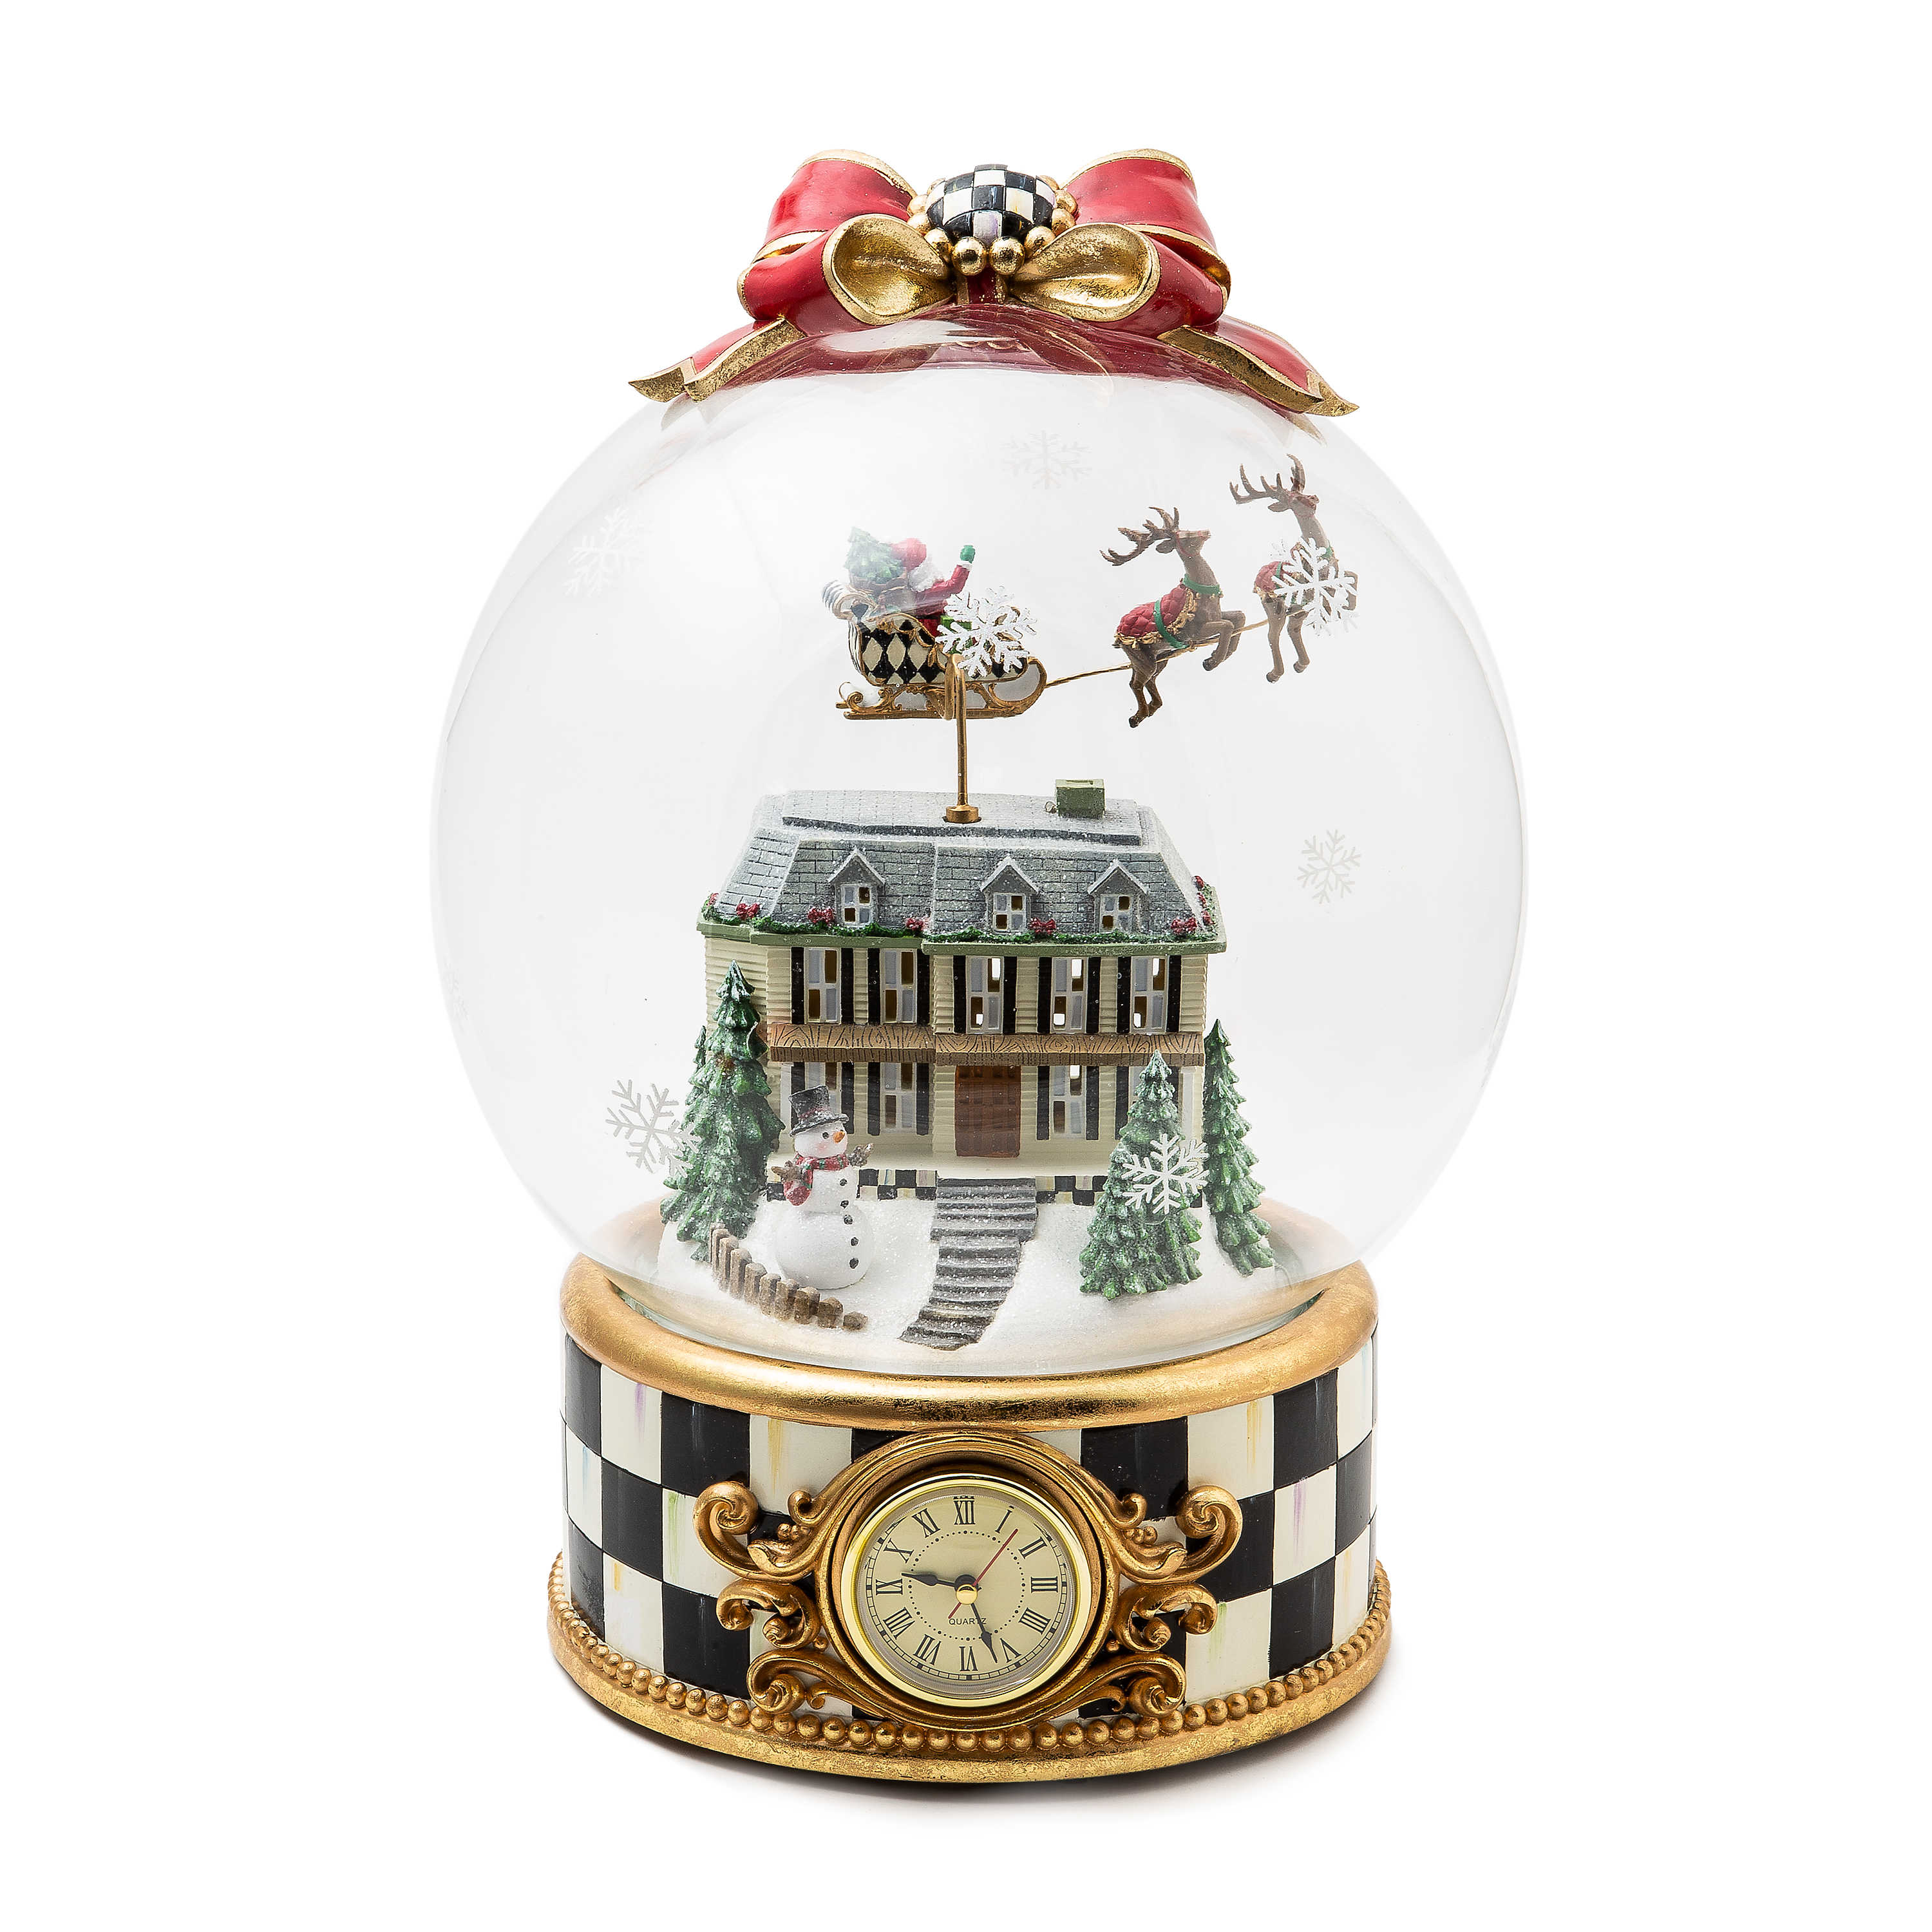 Christmas Magic Globe Clock mackenzie-childs Panama 0